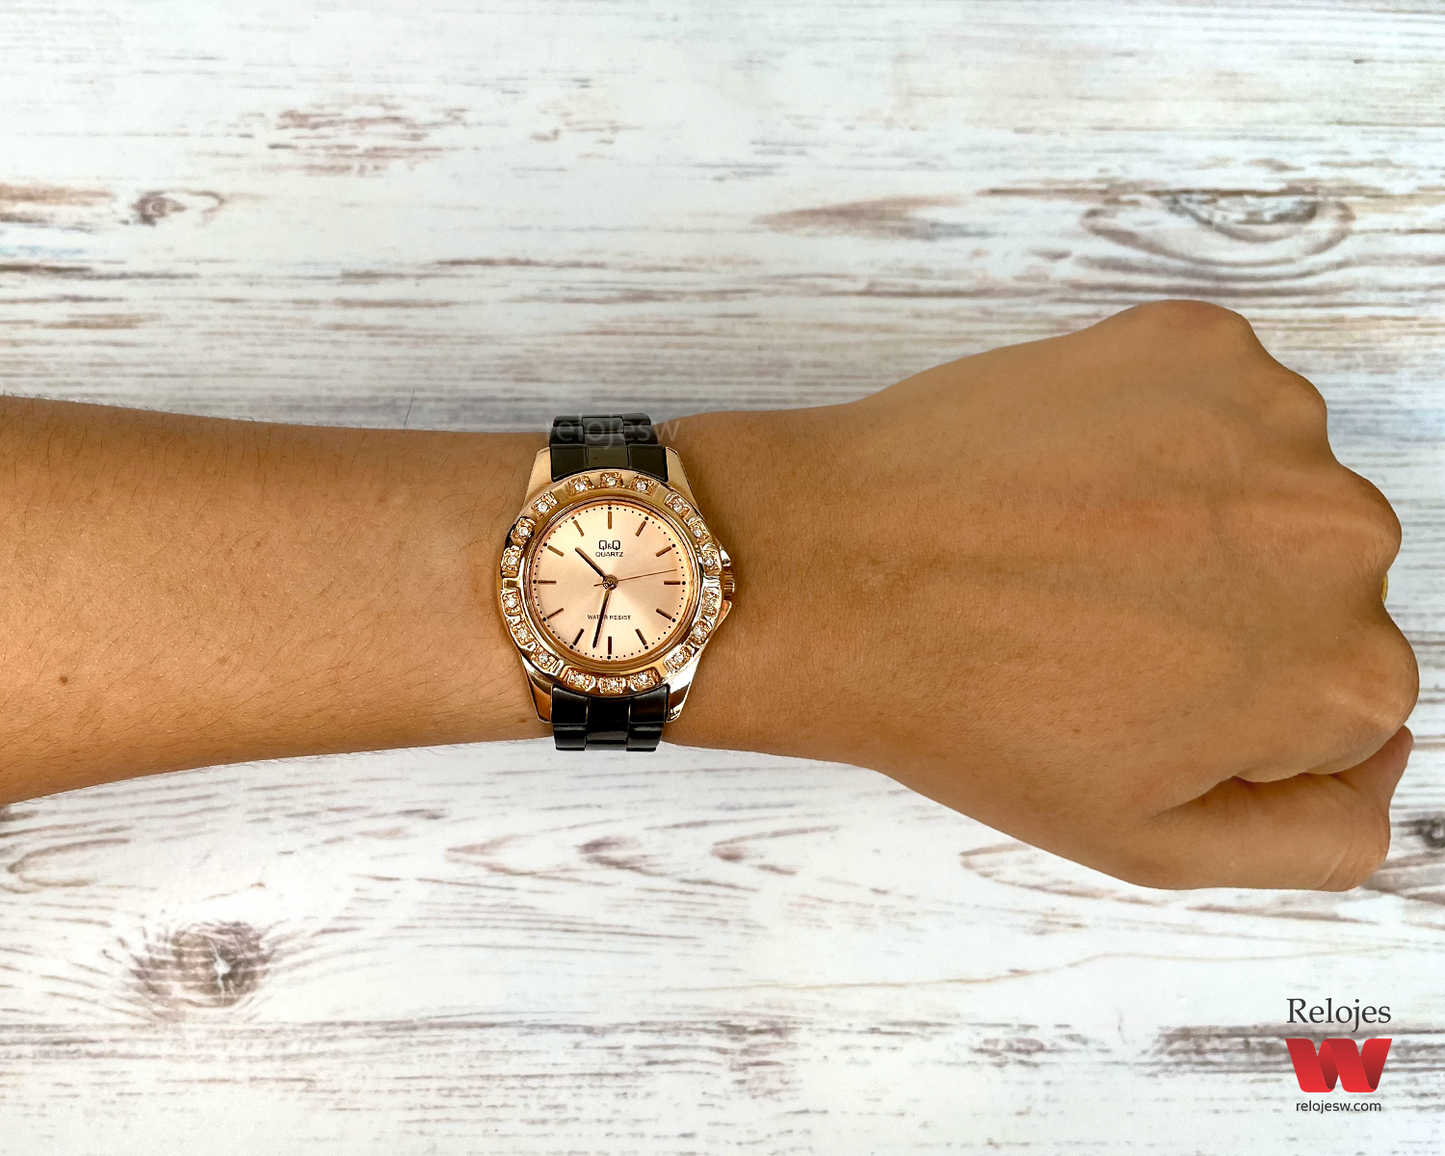 Reloj Q&Q Mujer Oro Rosa M201J003Y – Relojes W